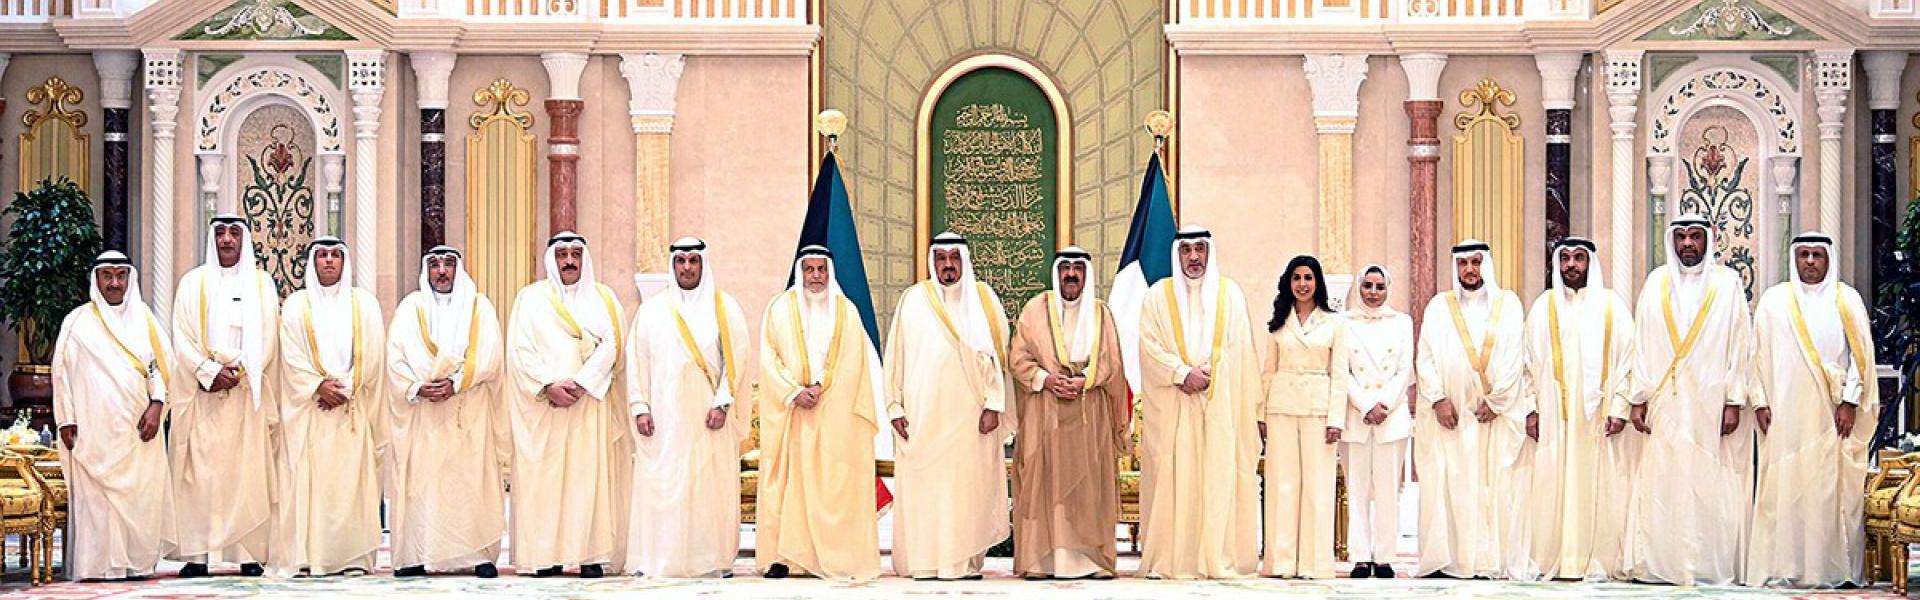 الإصلاحات الاقتصادية تتصدّر مهام الحكومة الكويتية الجديدة  